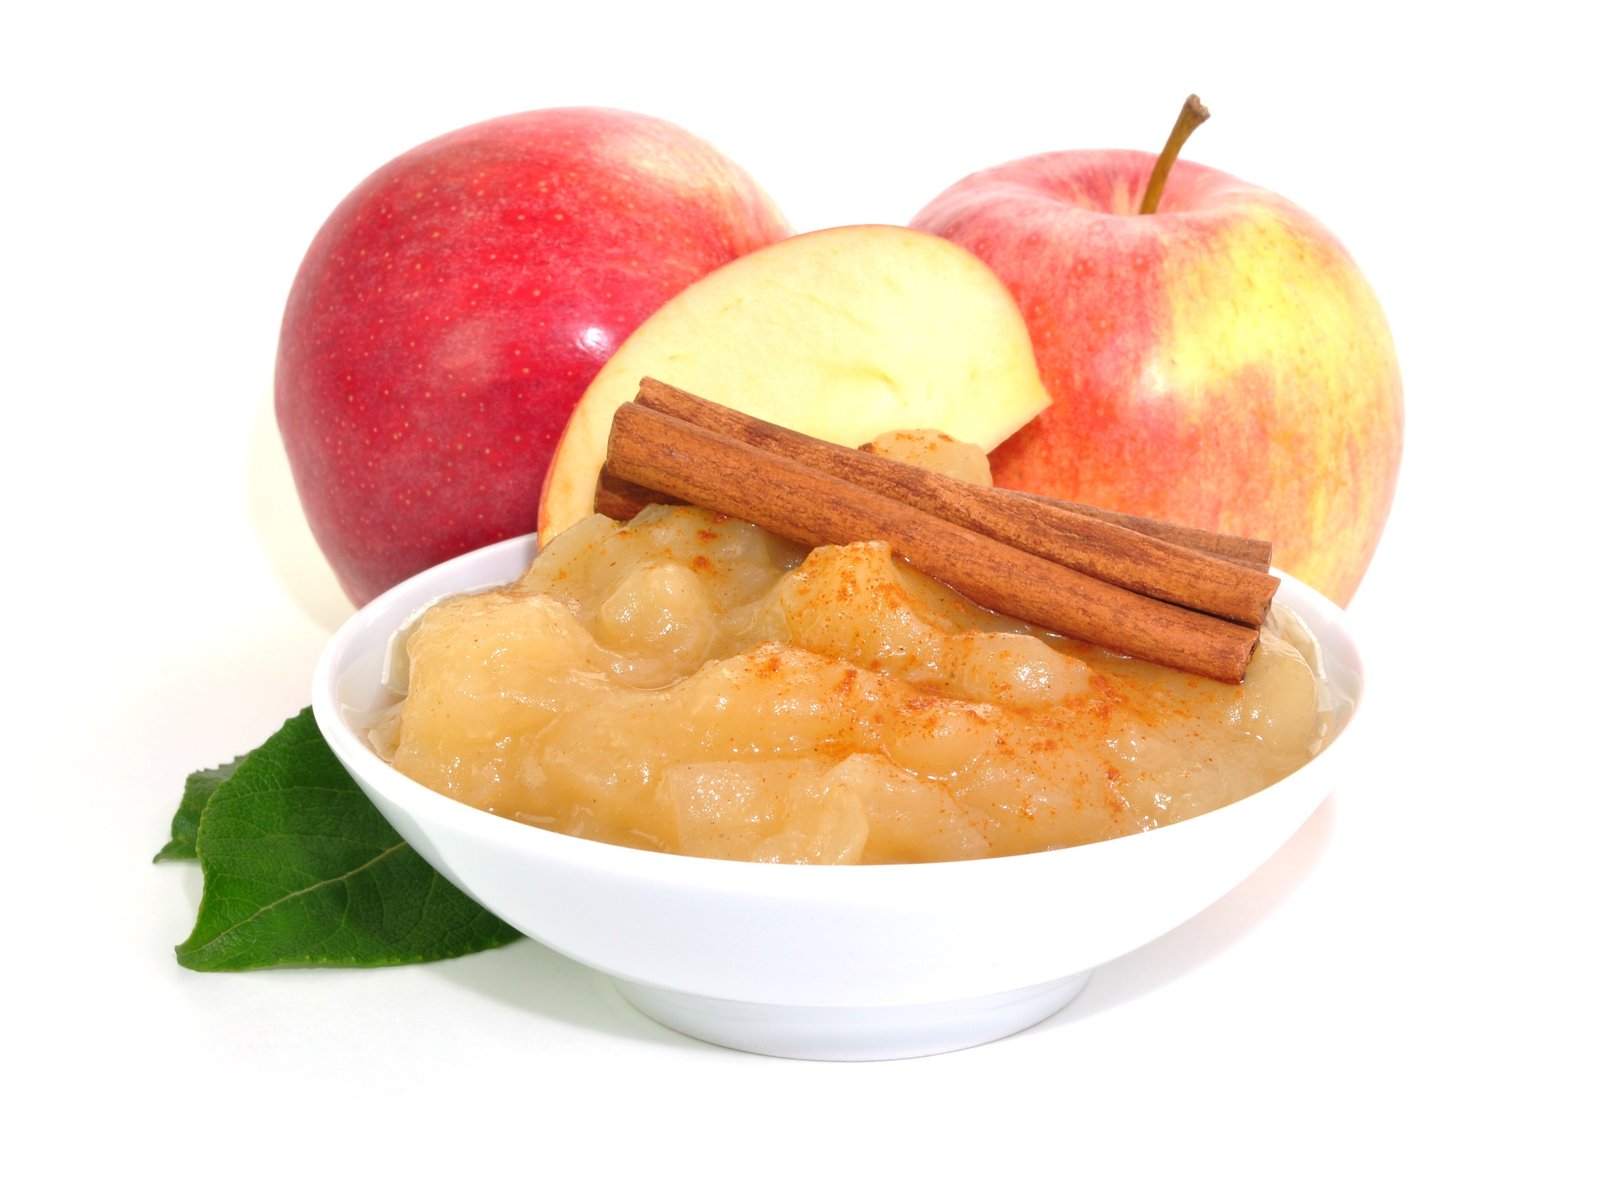 Zimt-Apfel-Schaum mit Sahne ist ein leckeres Dessert, das zur Vitamin-B12-Versorgung beiträgt.